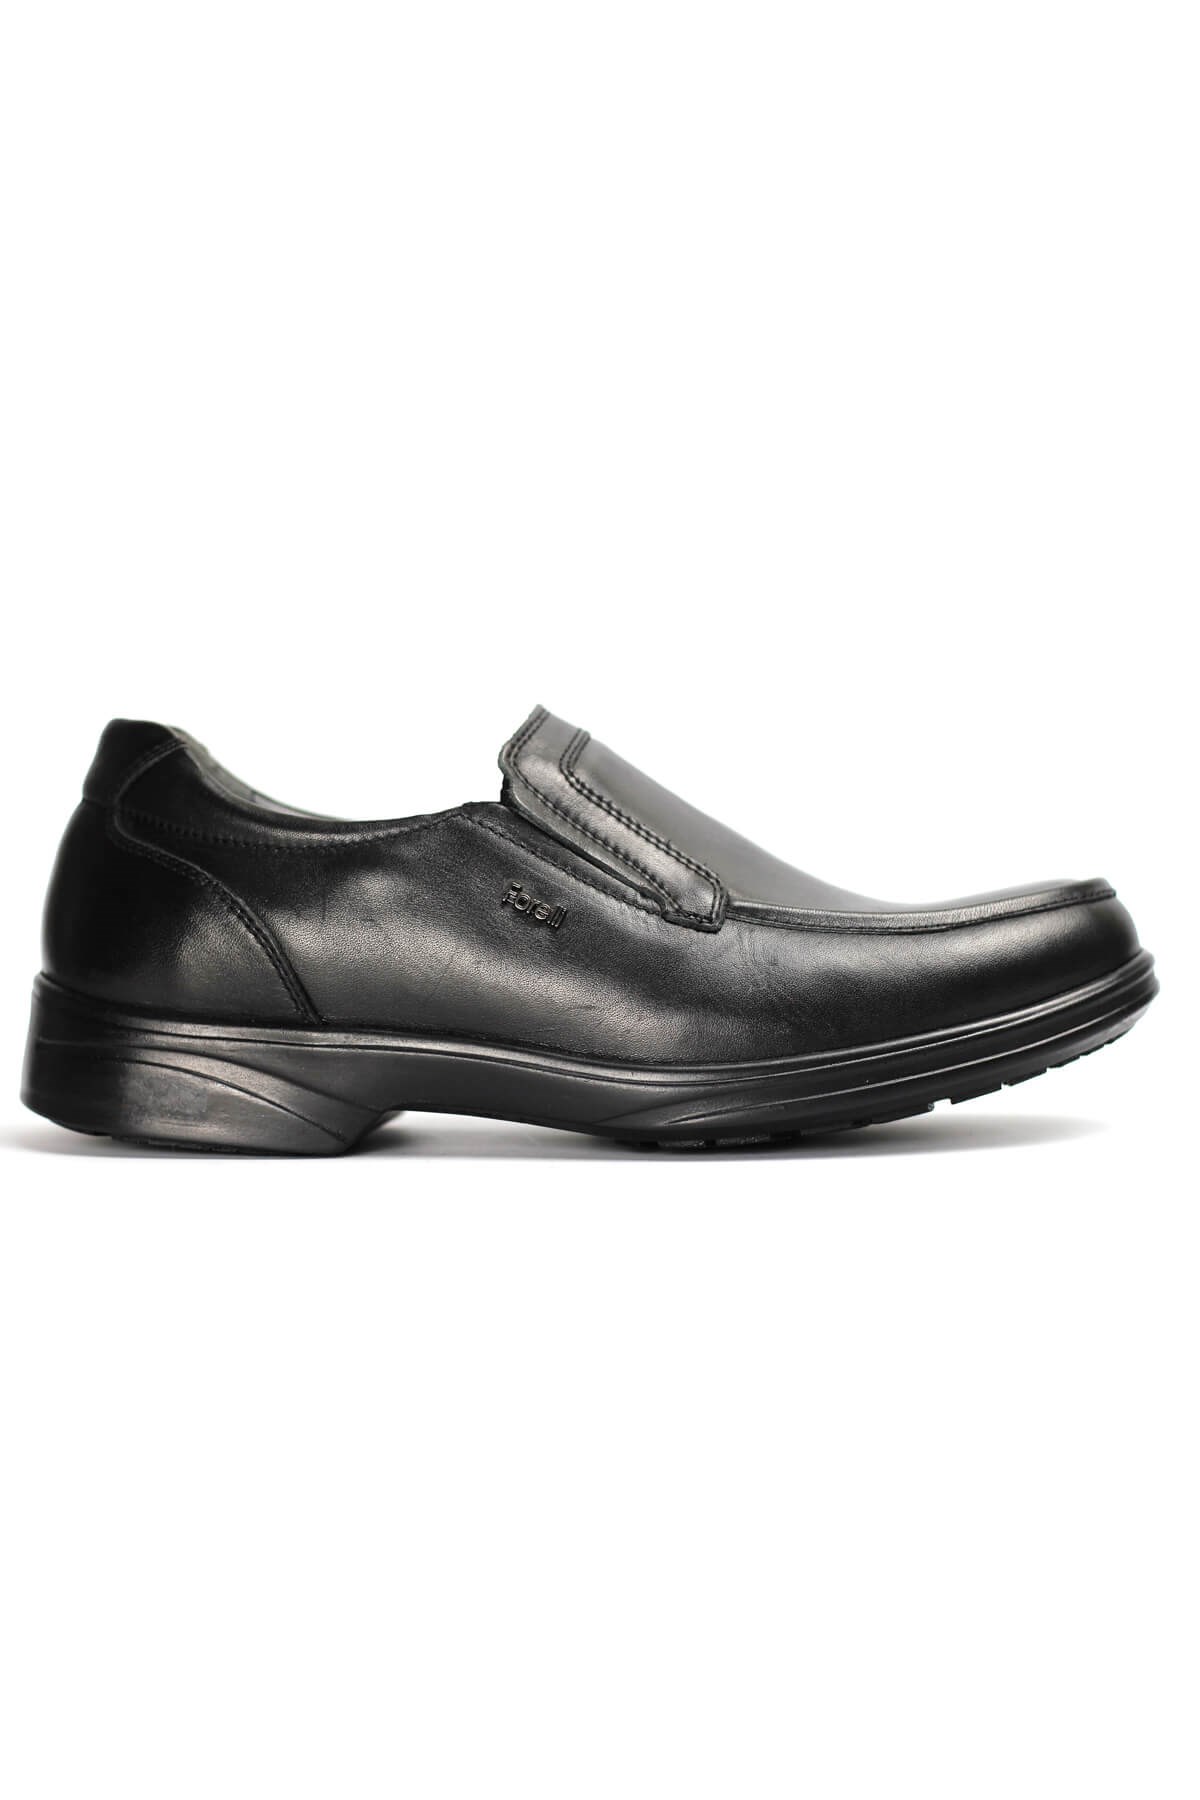 Forelli TOMS-H Comfort Erkek Ayakkabı Siyah AKAM011012-Siyah